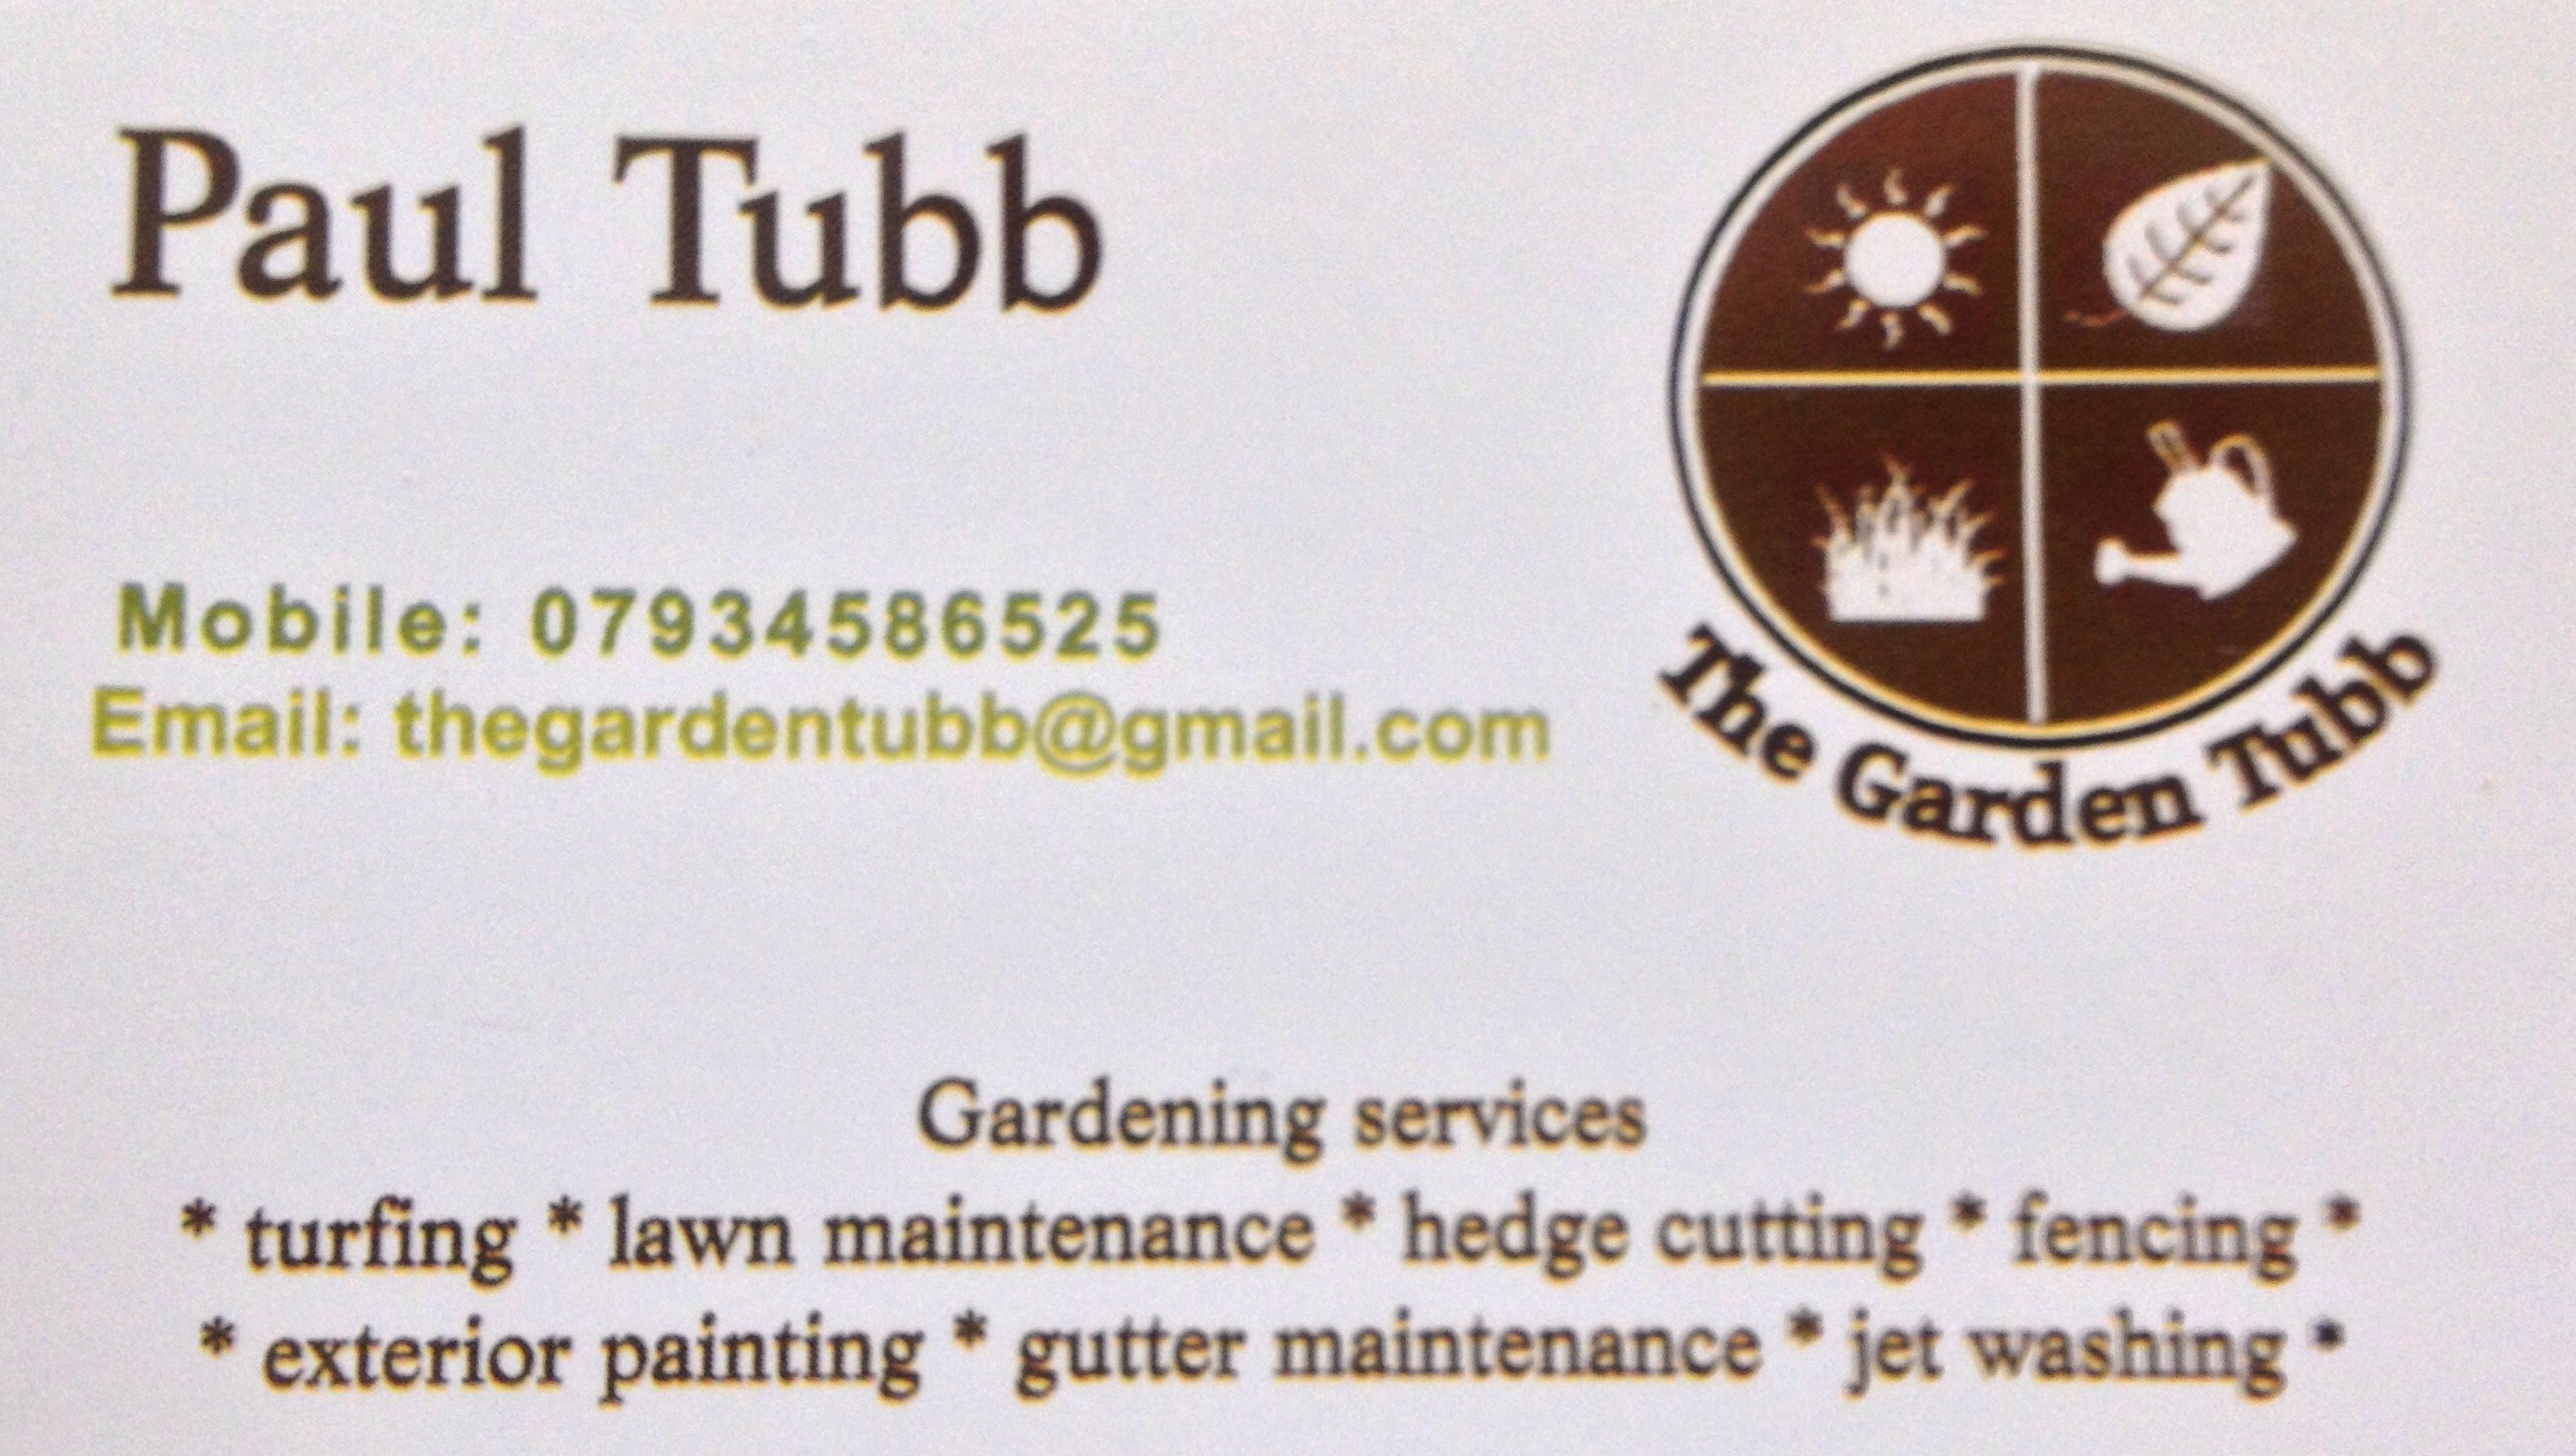 The Garden Tubb